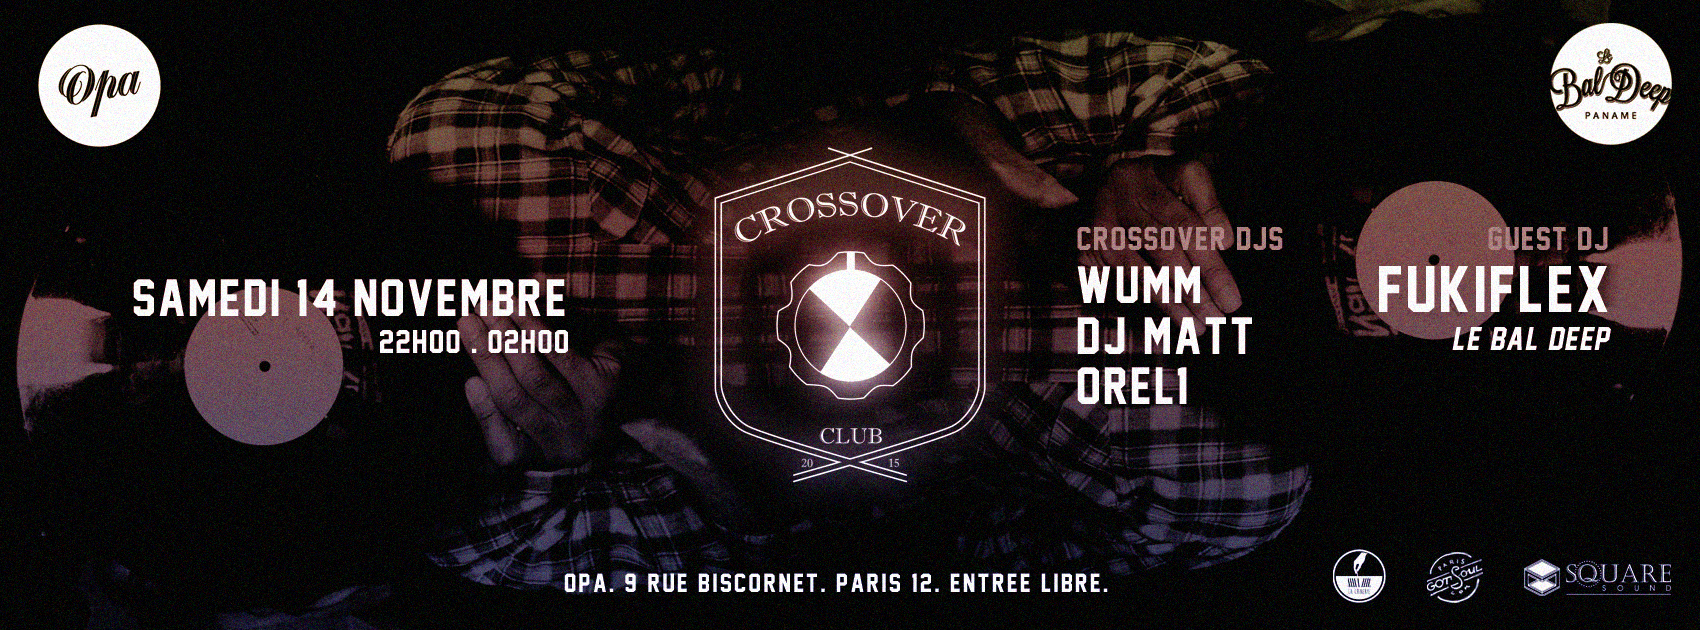 Crossover - 20151114 - FB